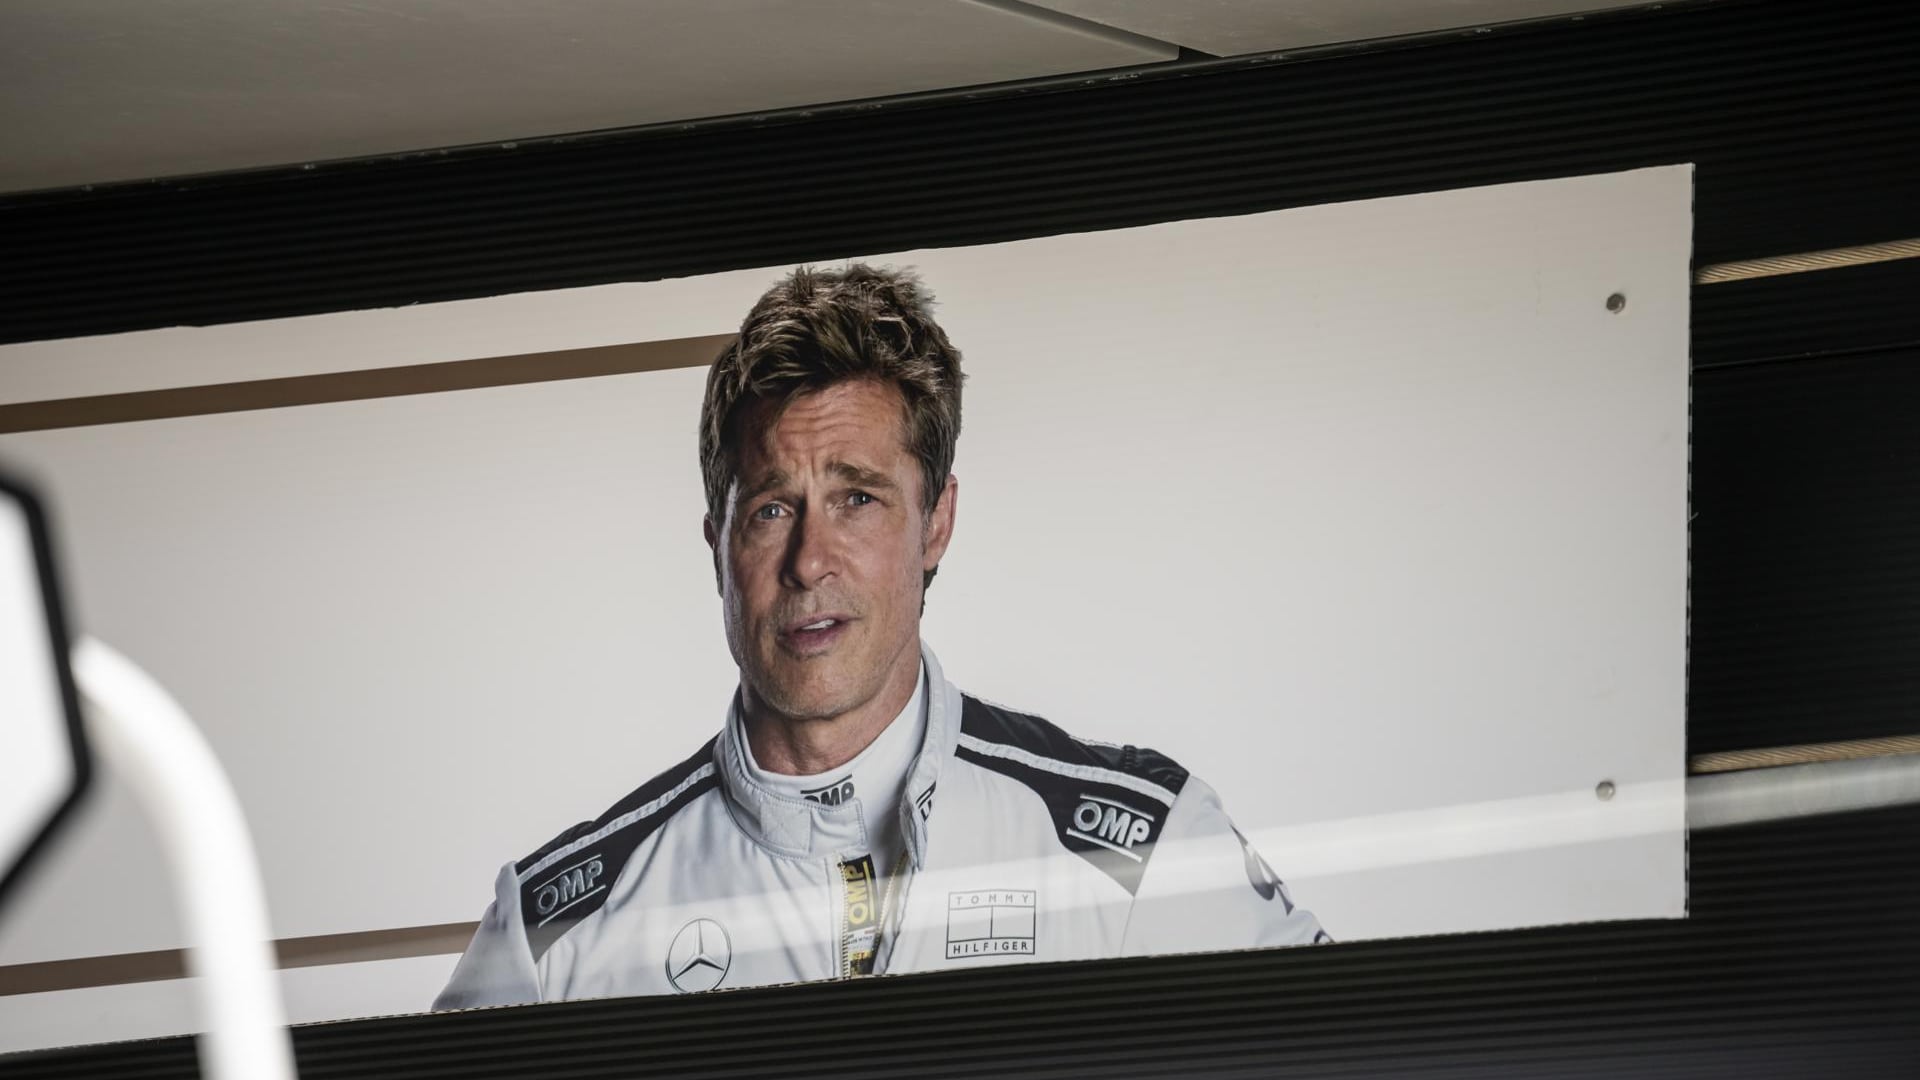 ¿Qué hacía Brad Pitt manejando un auto de Fórmula Uno en Silverstone?